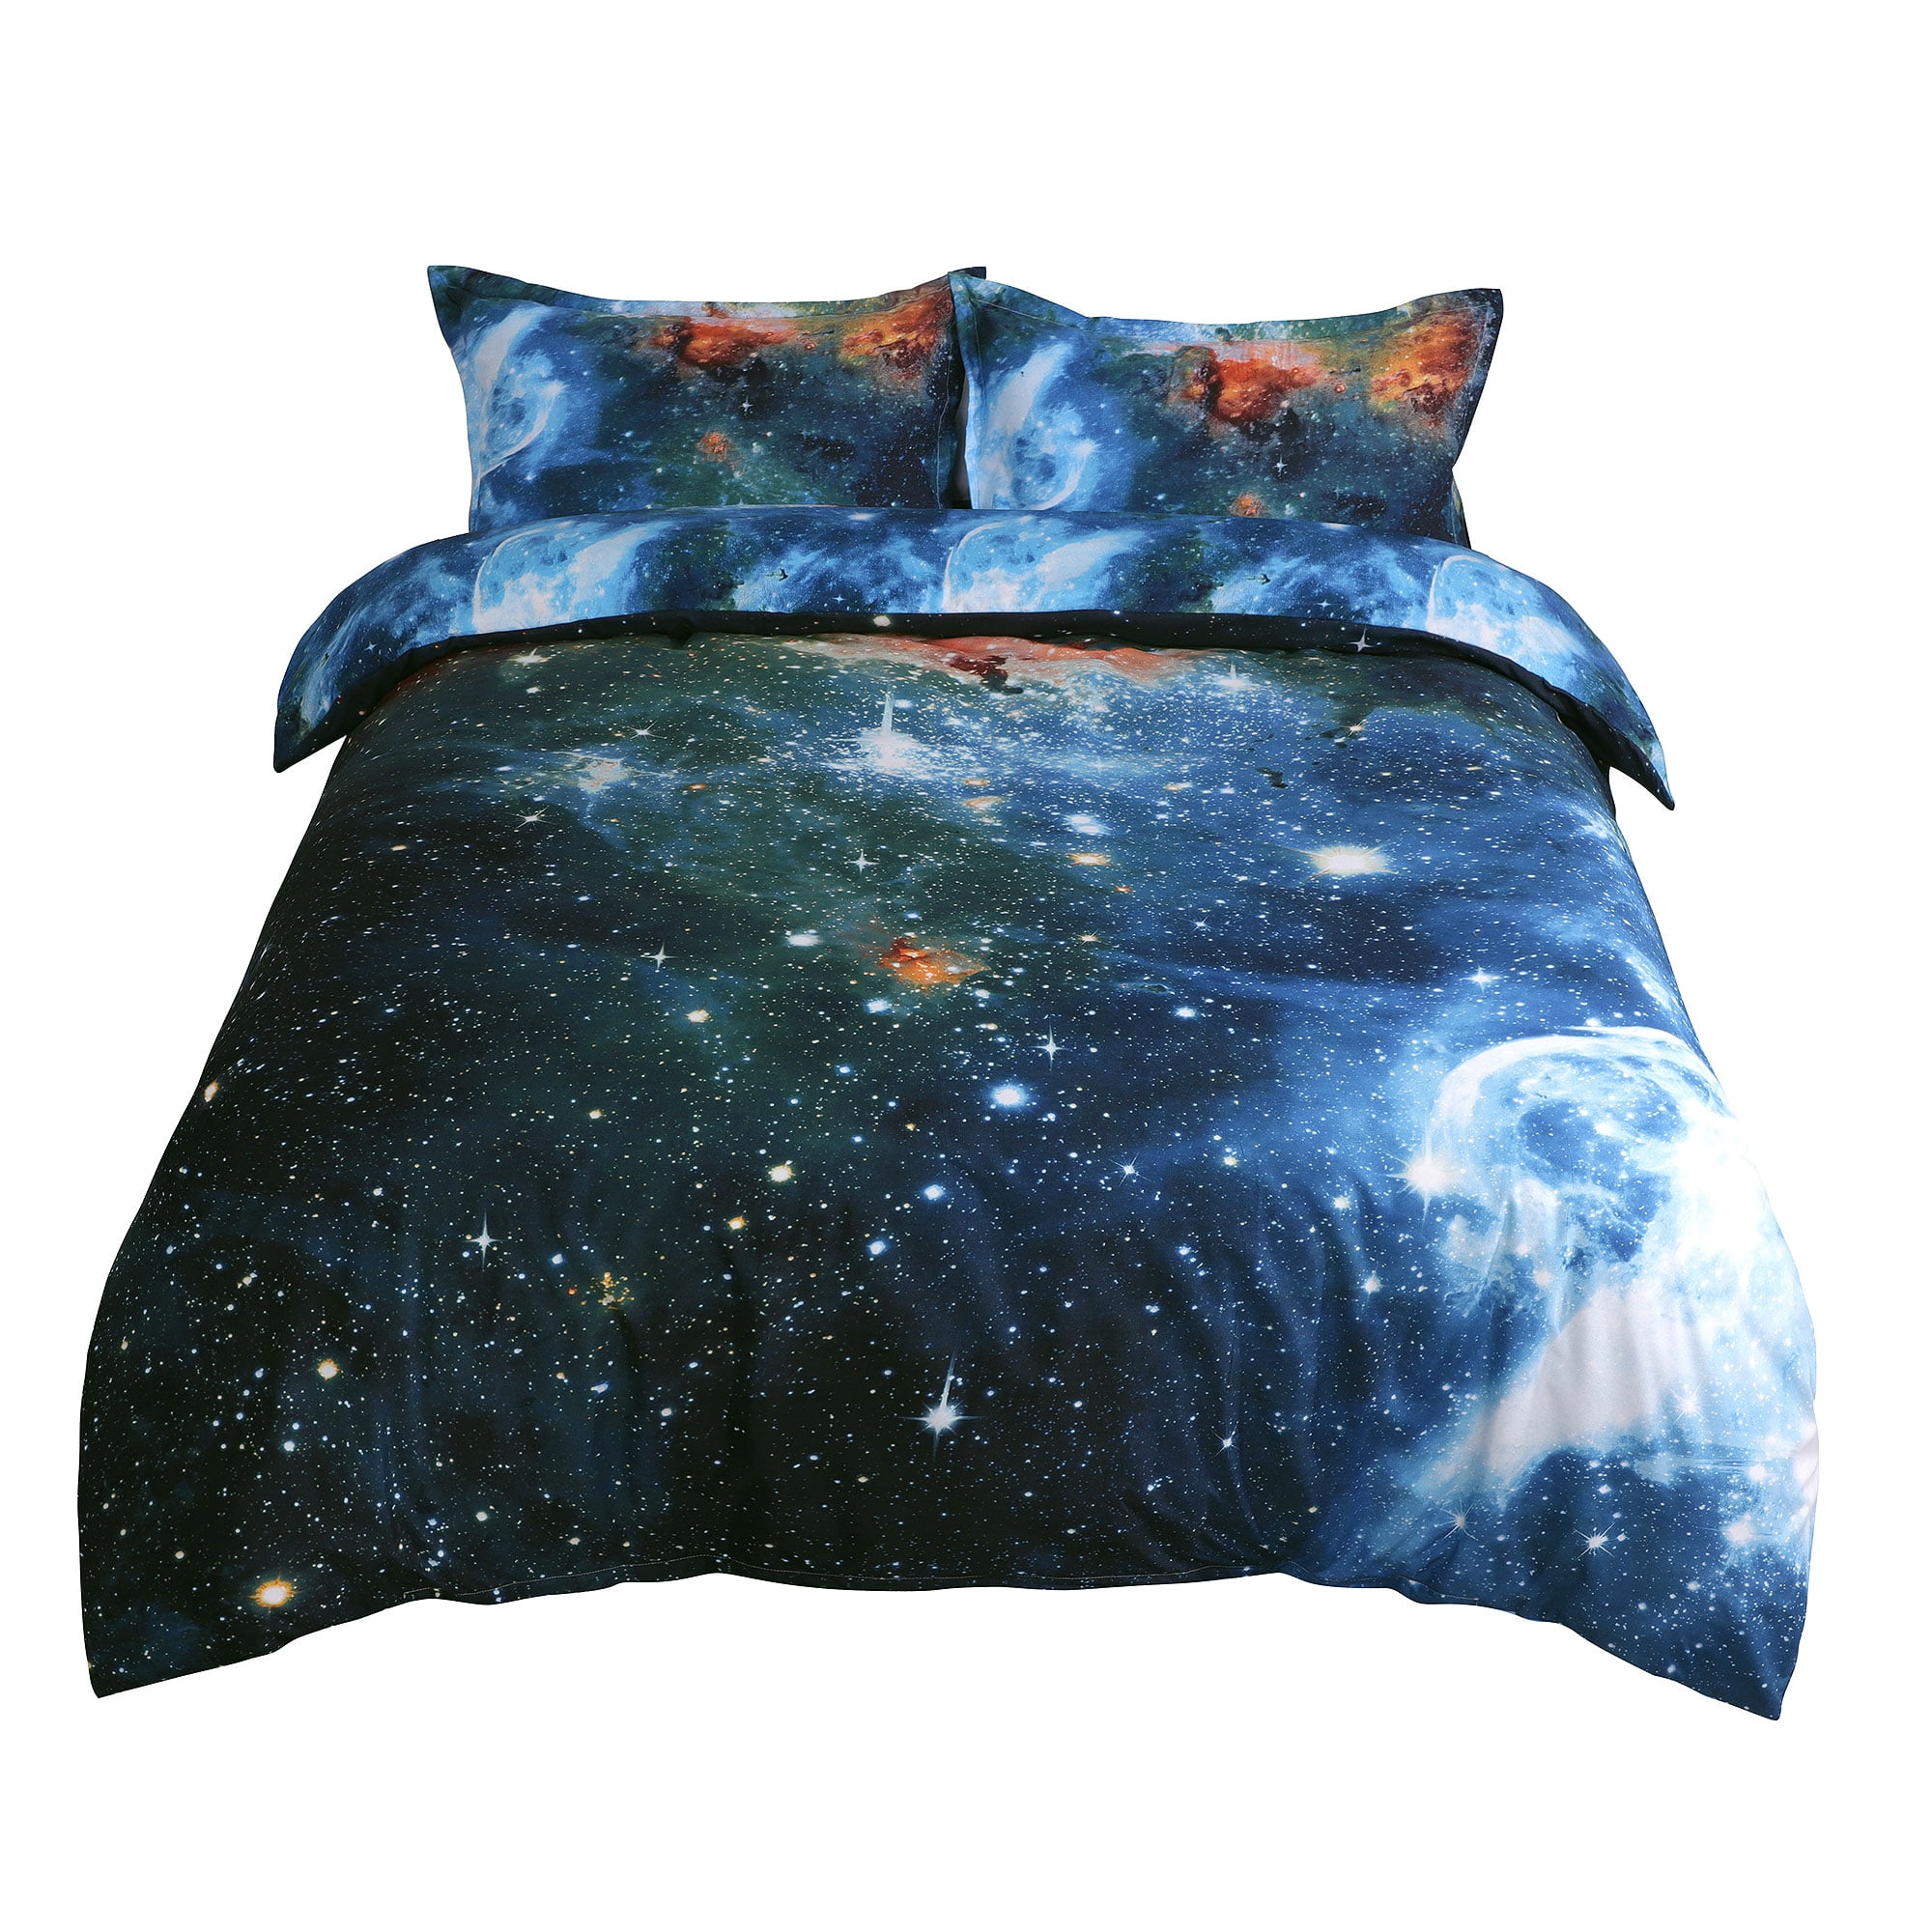 Star Galaxy Blue Bed Linens Twin Full Queen King Duvet Set w/ Filler 4pc 